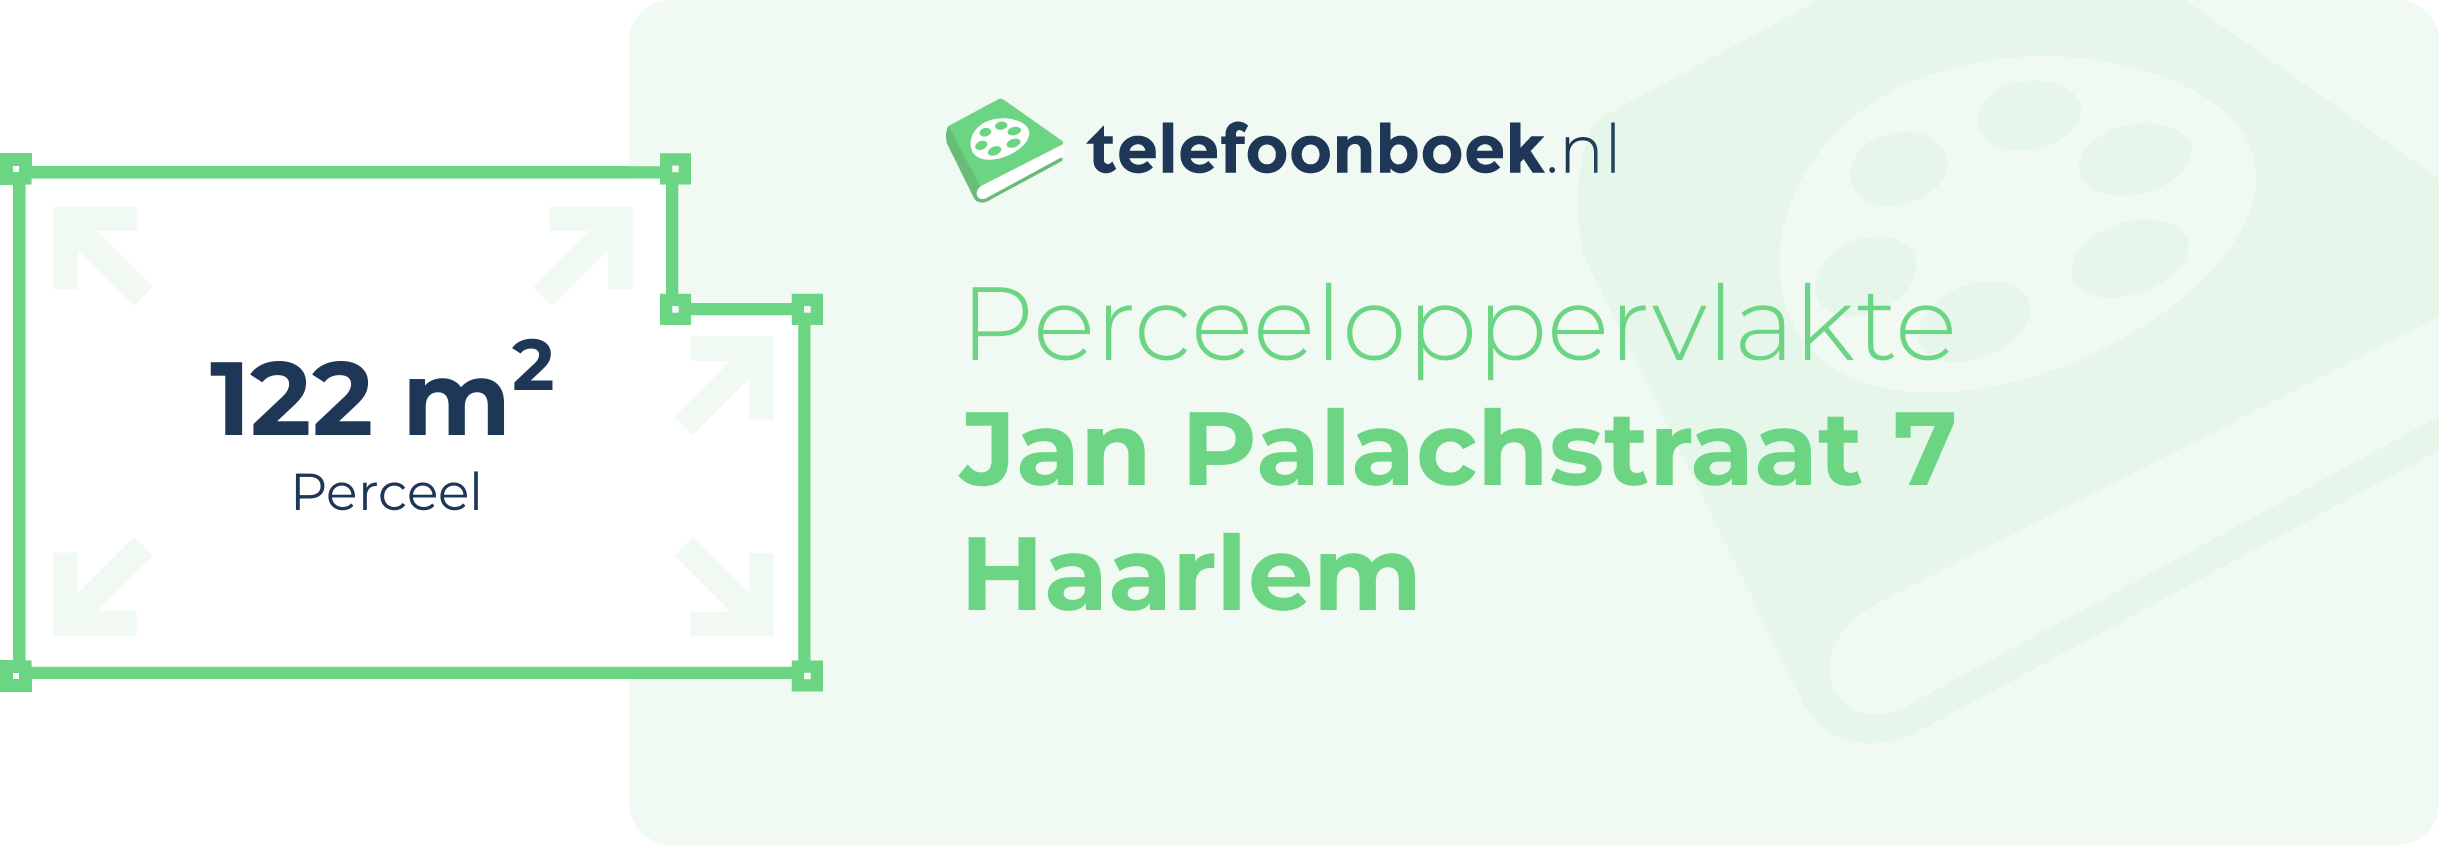 Perceeloppervlakte Jan Palachstraat 7 Haarlem